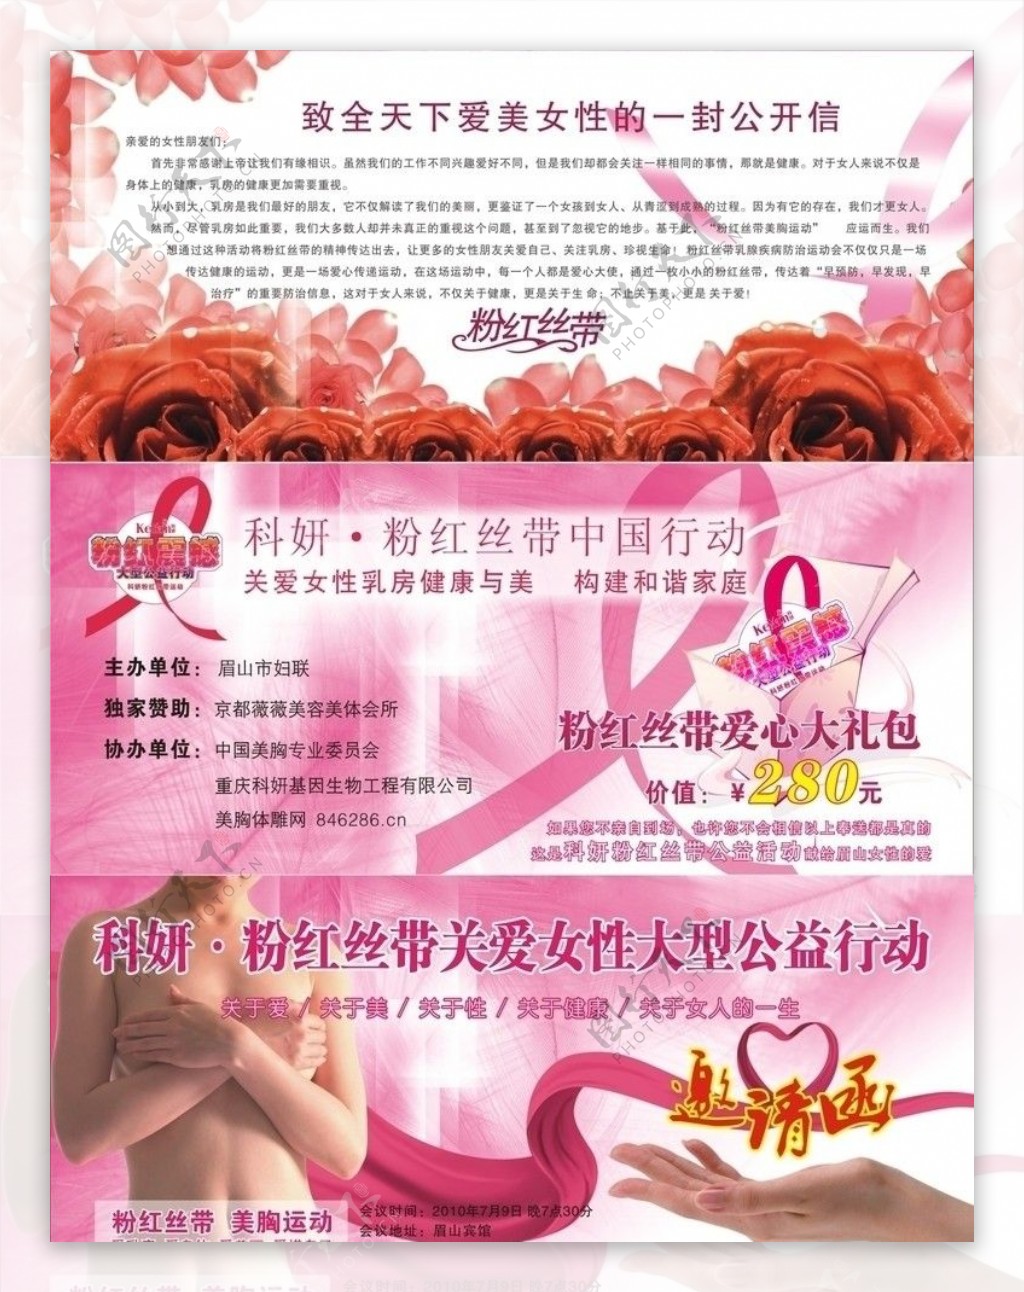 粉红丝带公益宣传折页广告图片